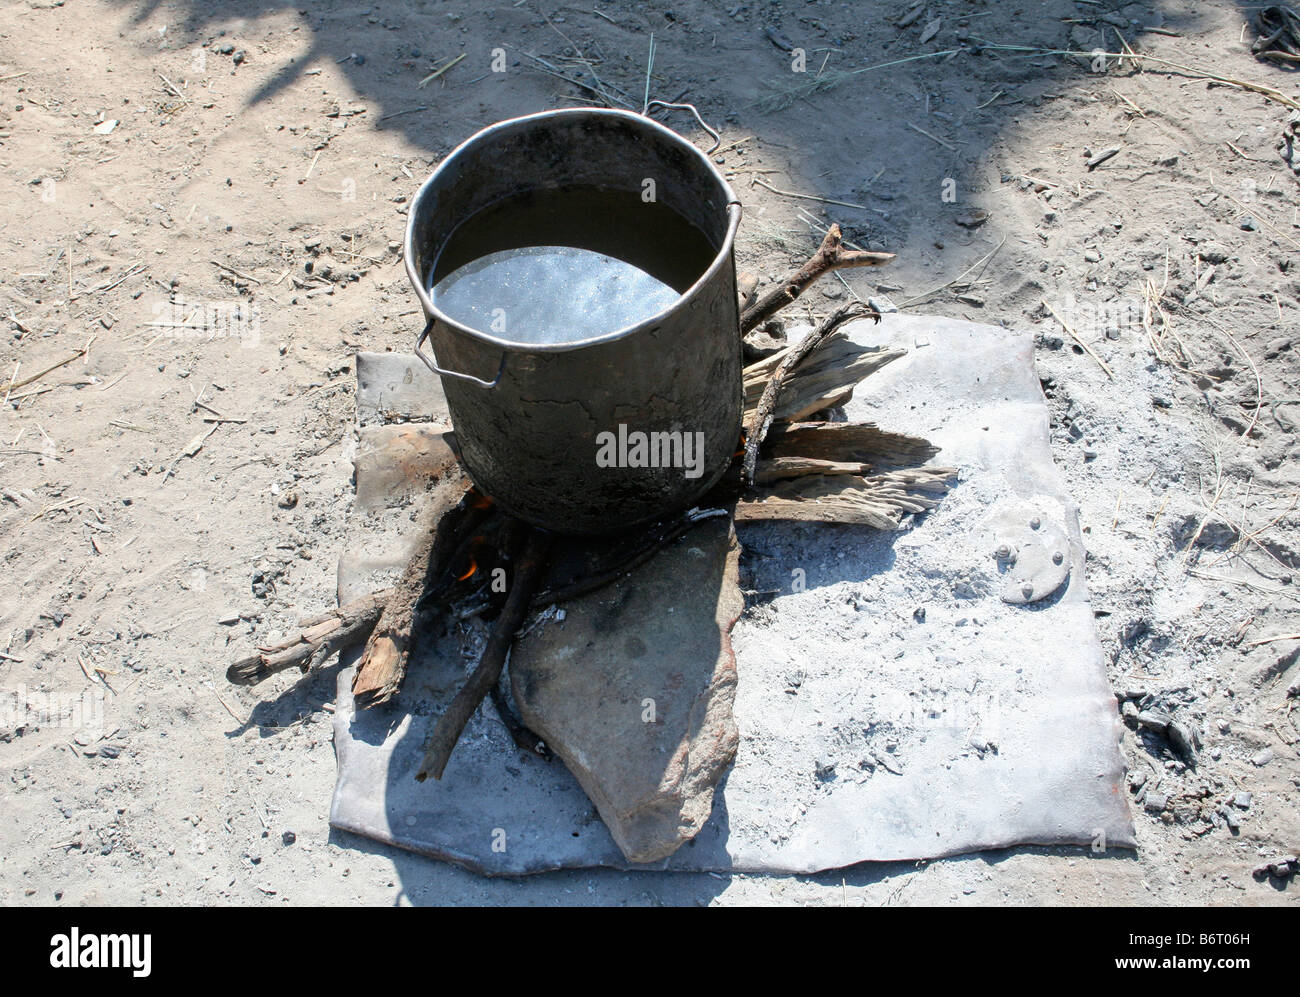 Himba cooking pot Stock Photo